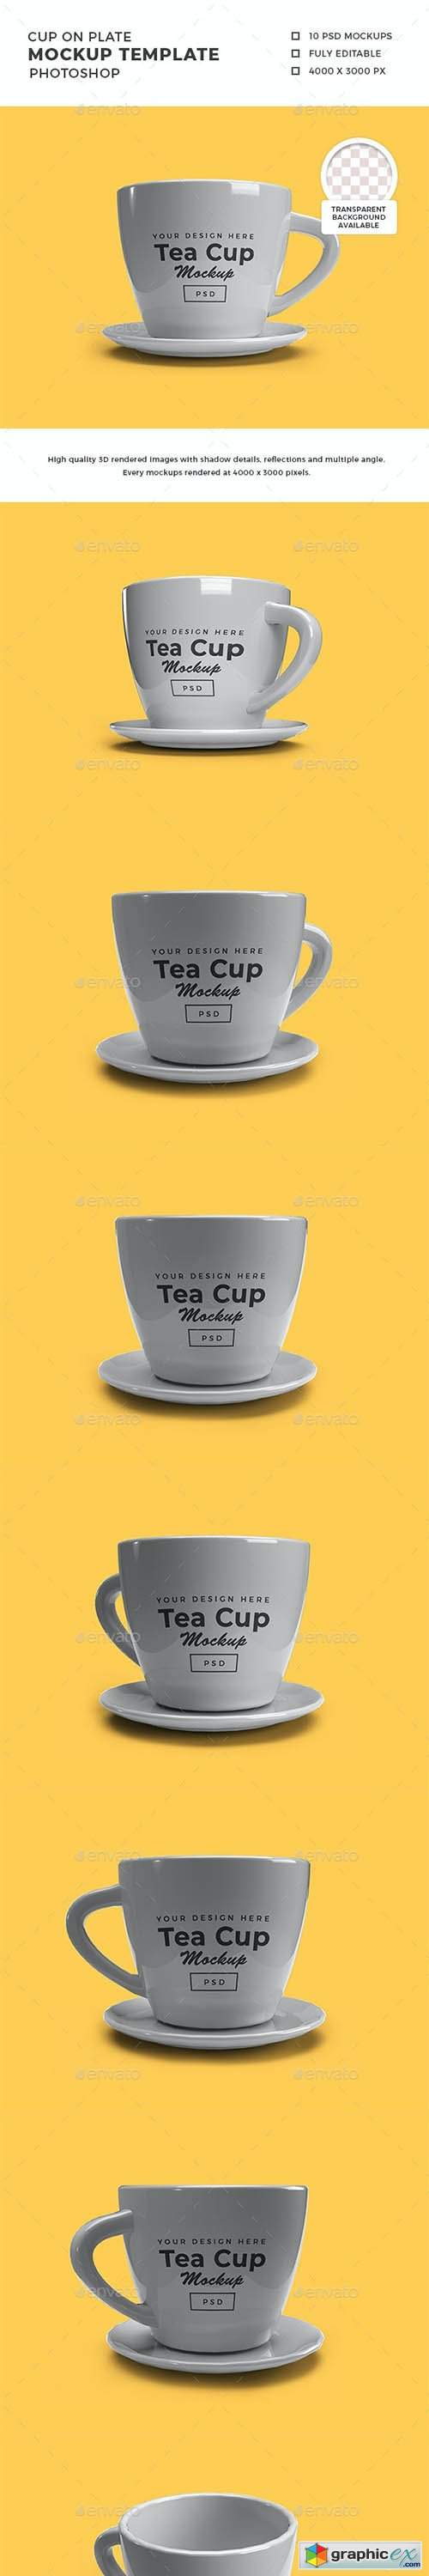 Tea Cup on Plate 3D Mockup Template 